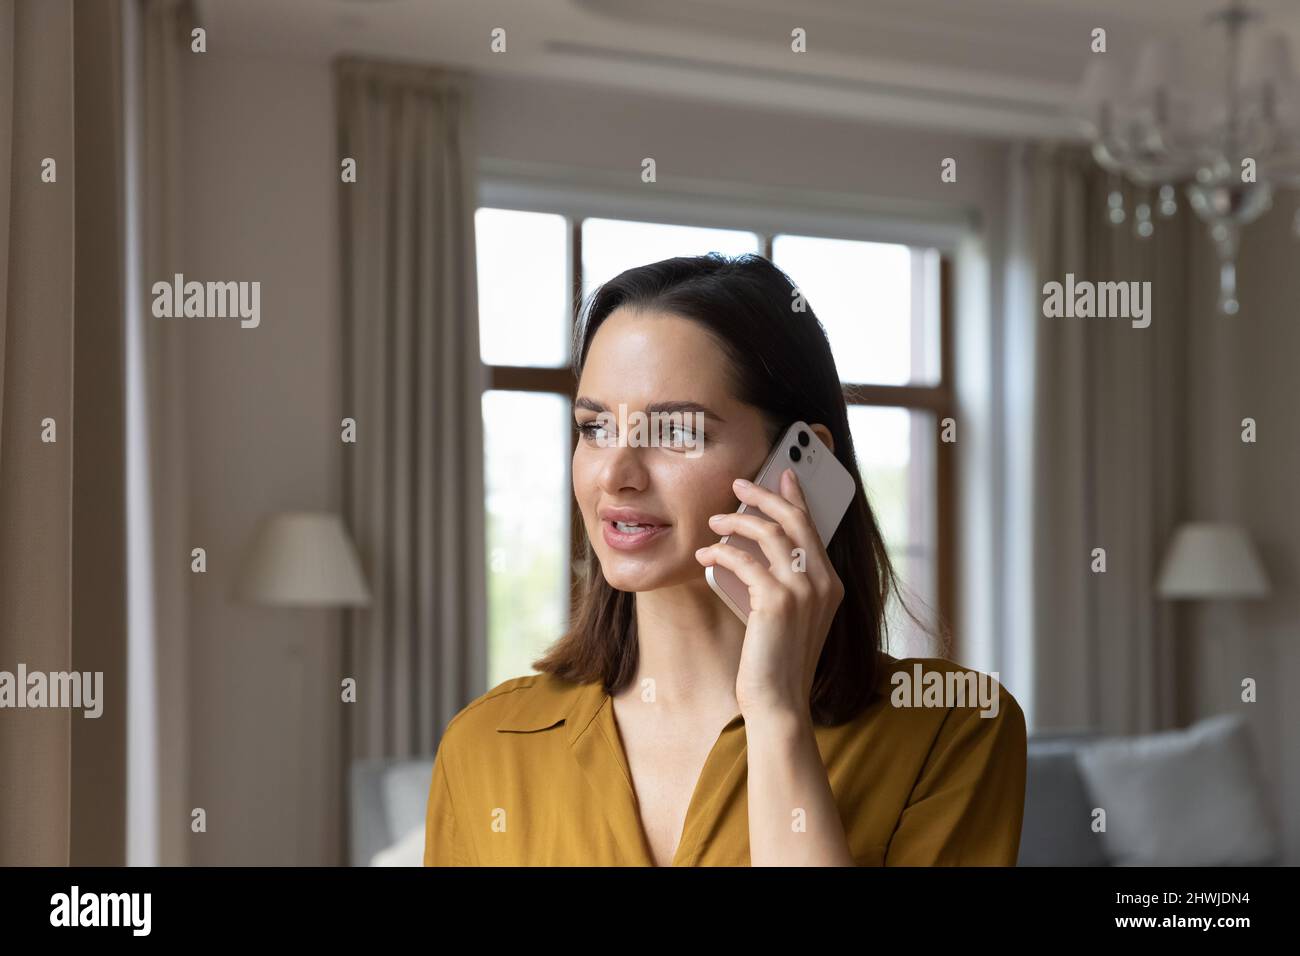 Junge Frau, die im luxuriösen Wohnzimmer steht, spricht auf dem Smartphone Stockfoto